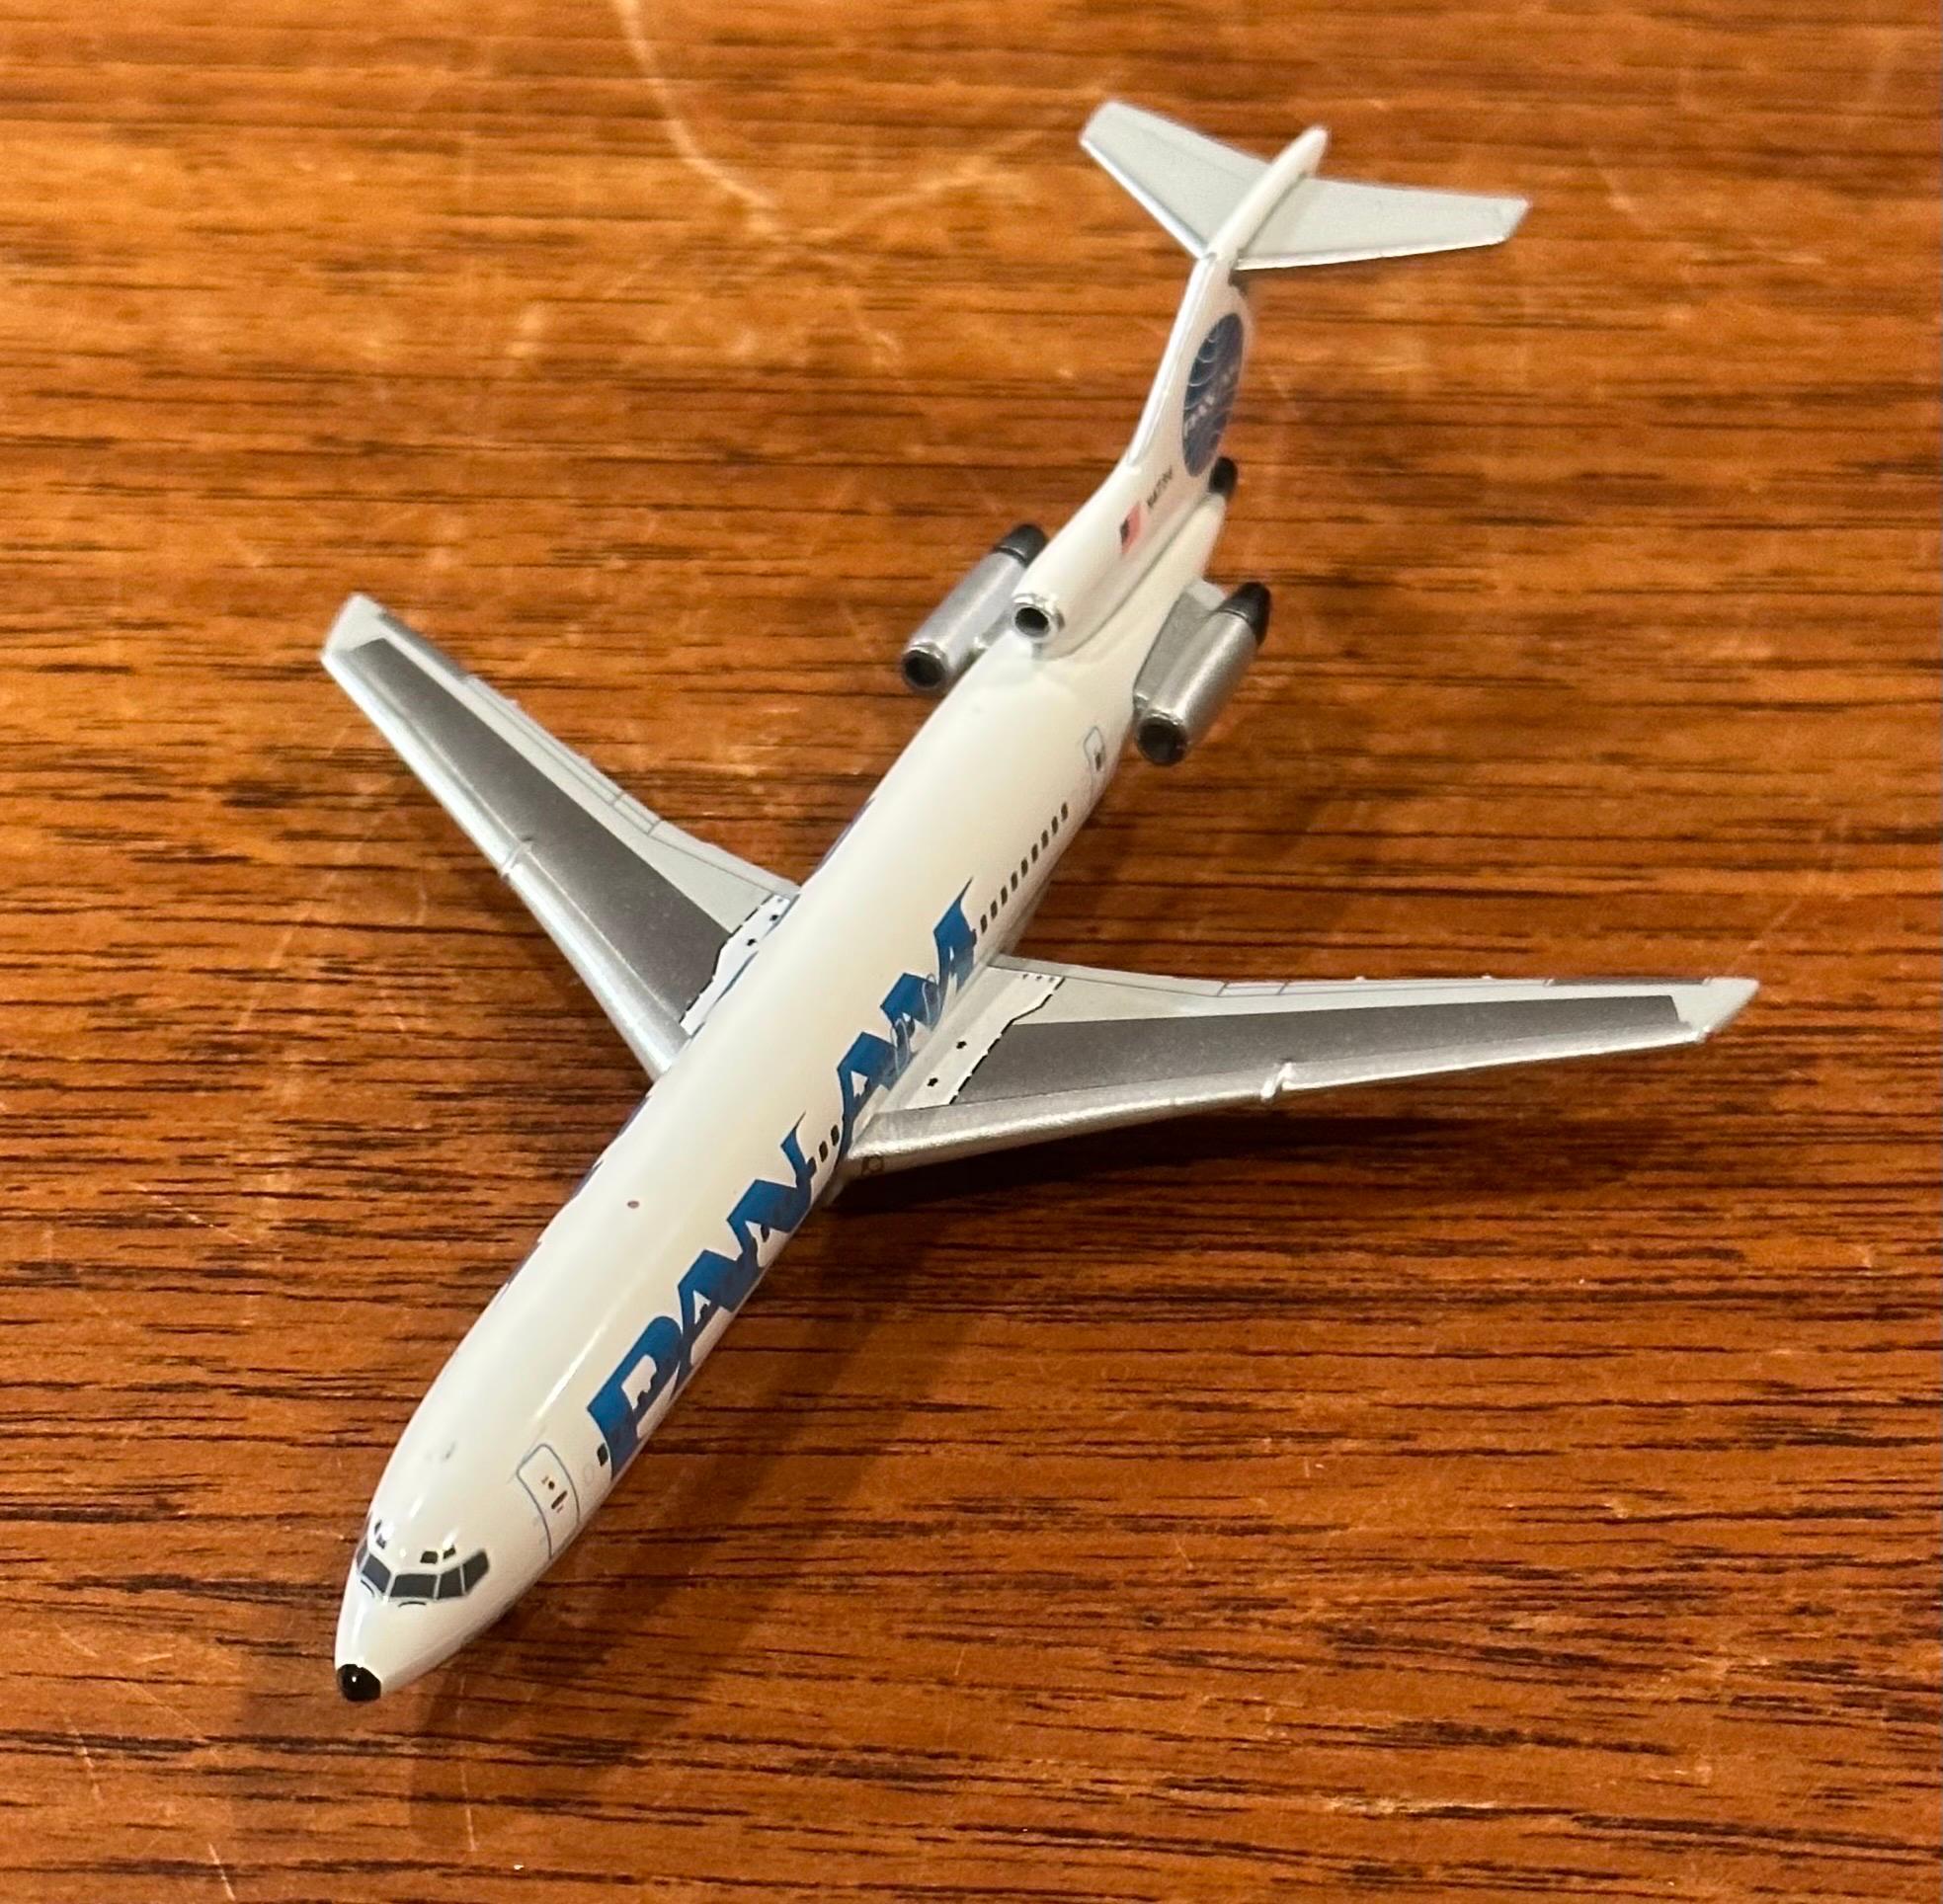 20th Century Pan American Airlines Jetliner / Airplane Die Cast Paperweight Model